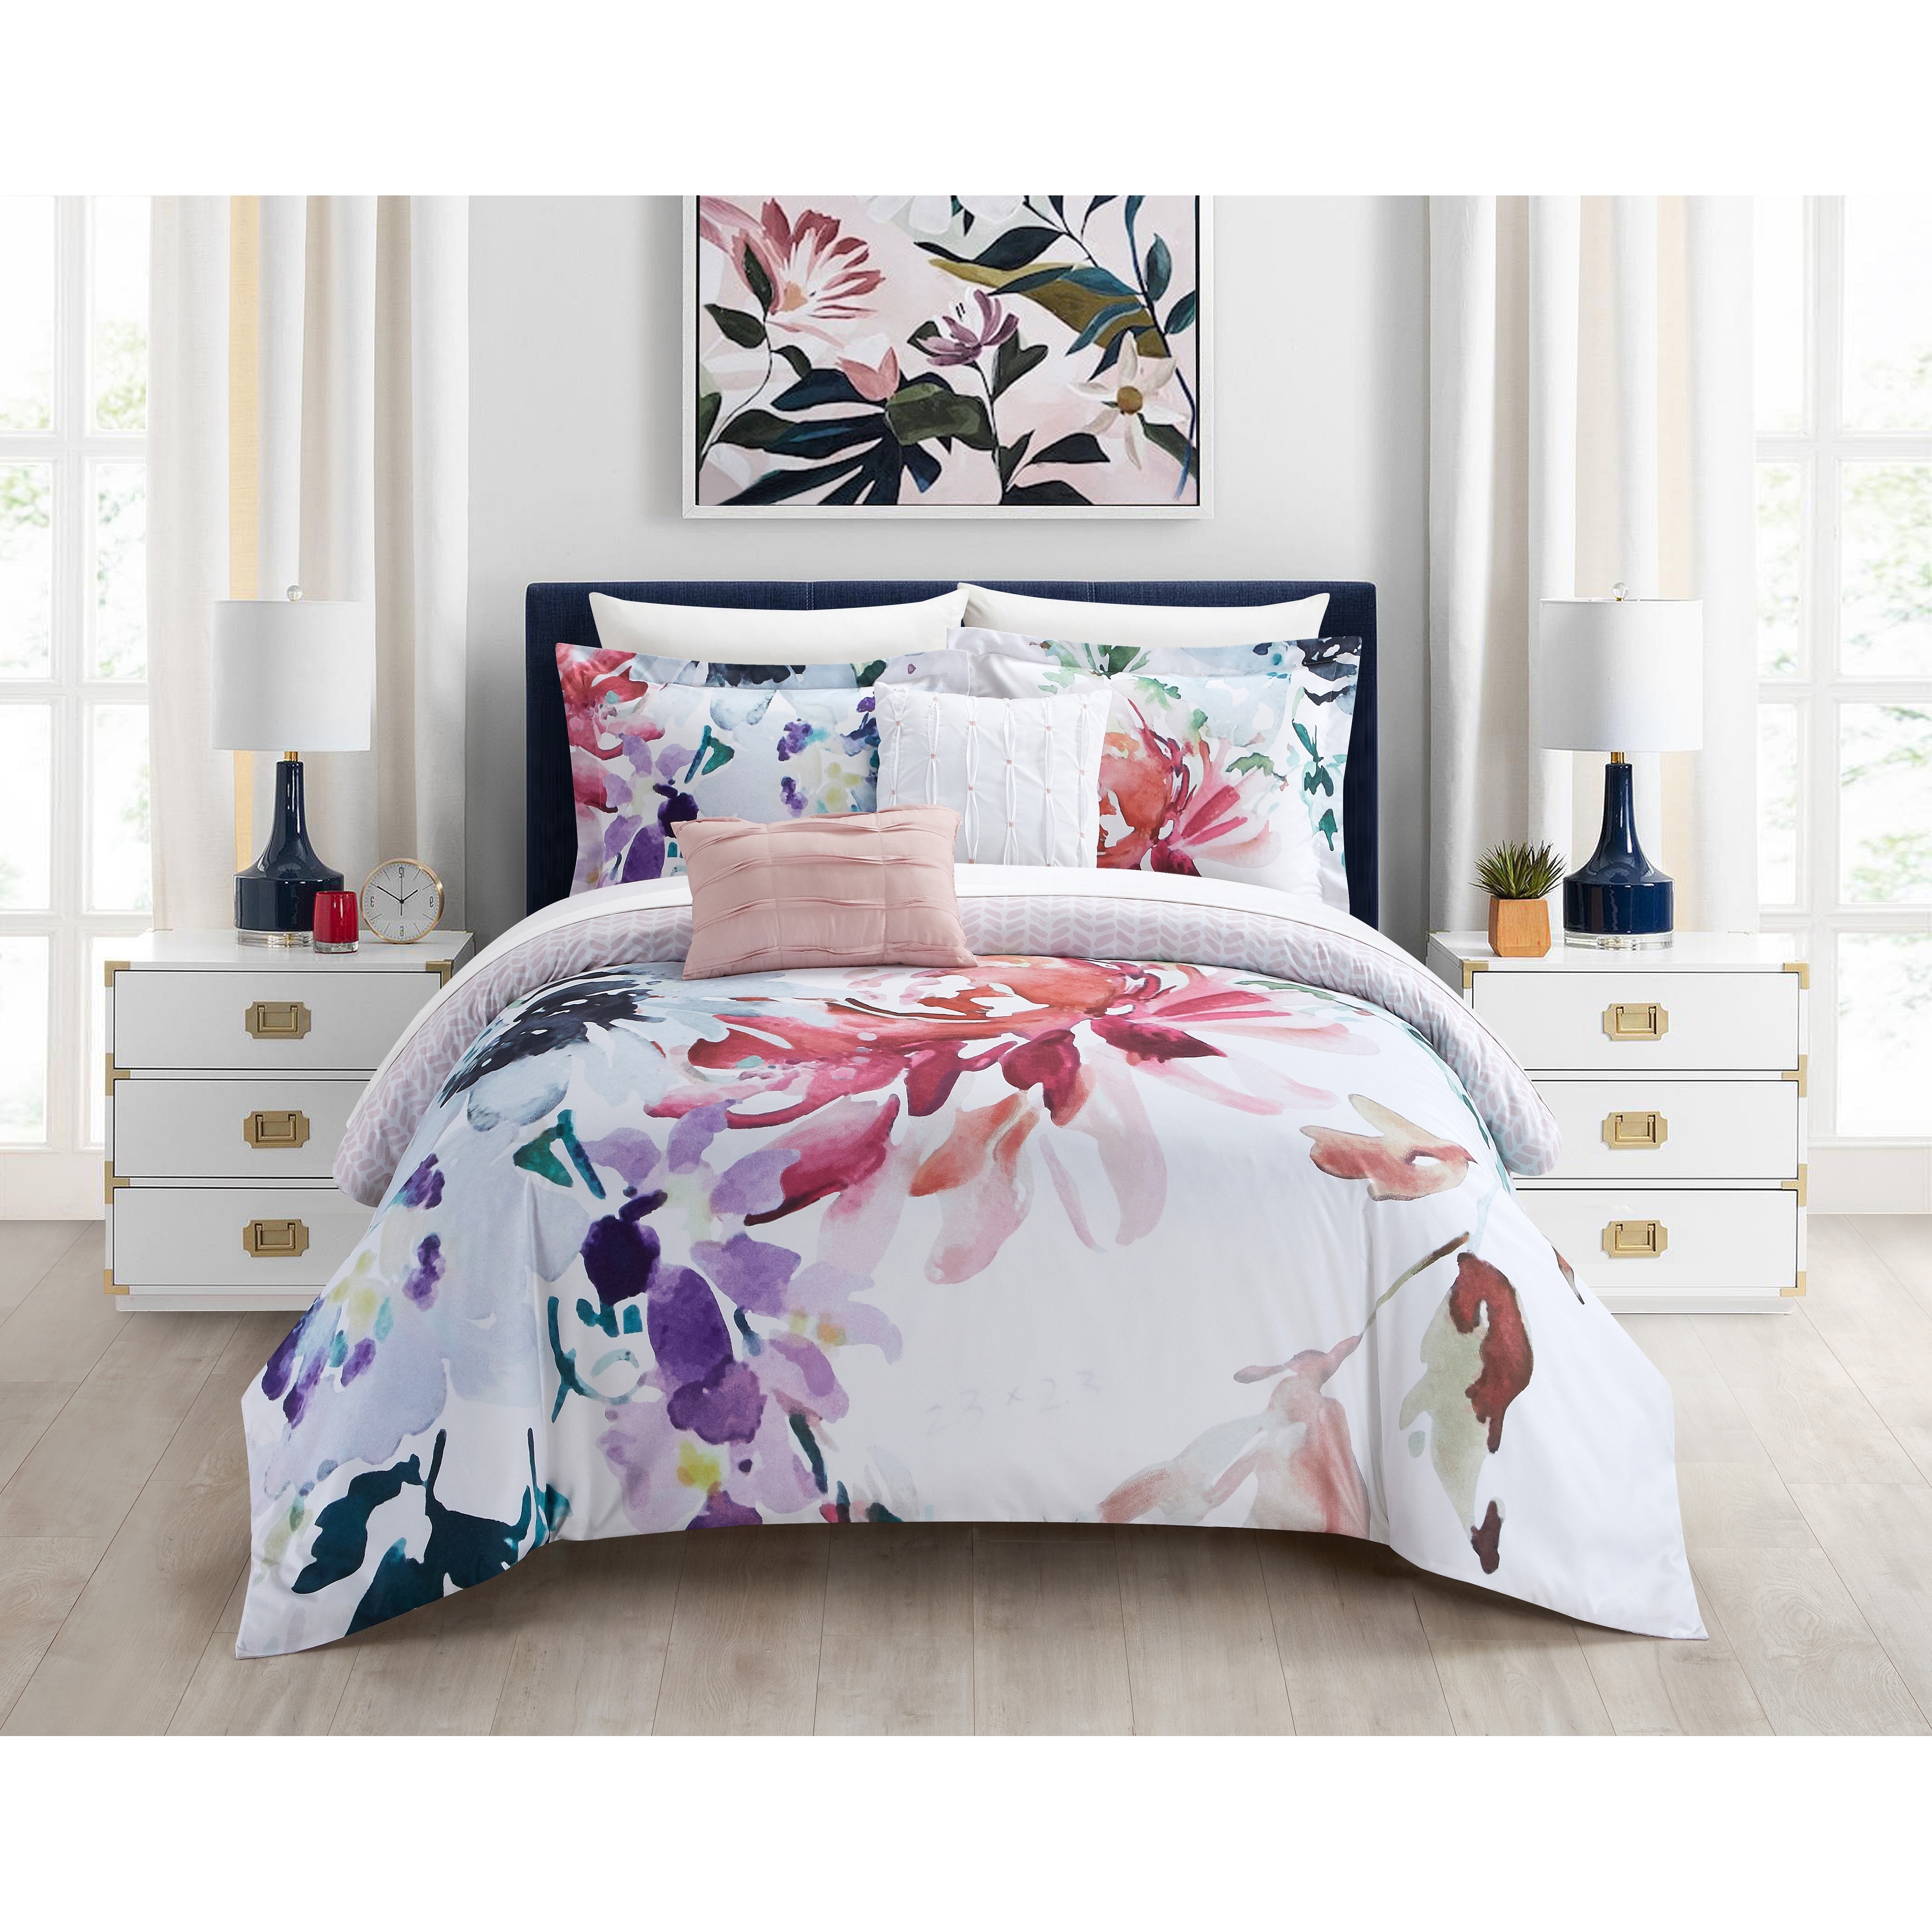 Reversible Queen Size Comforter Set Elegant and Cozy Grey